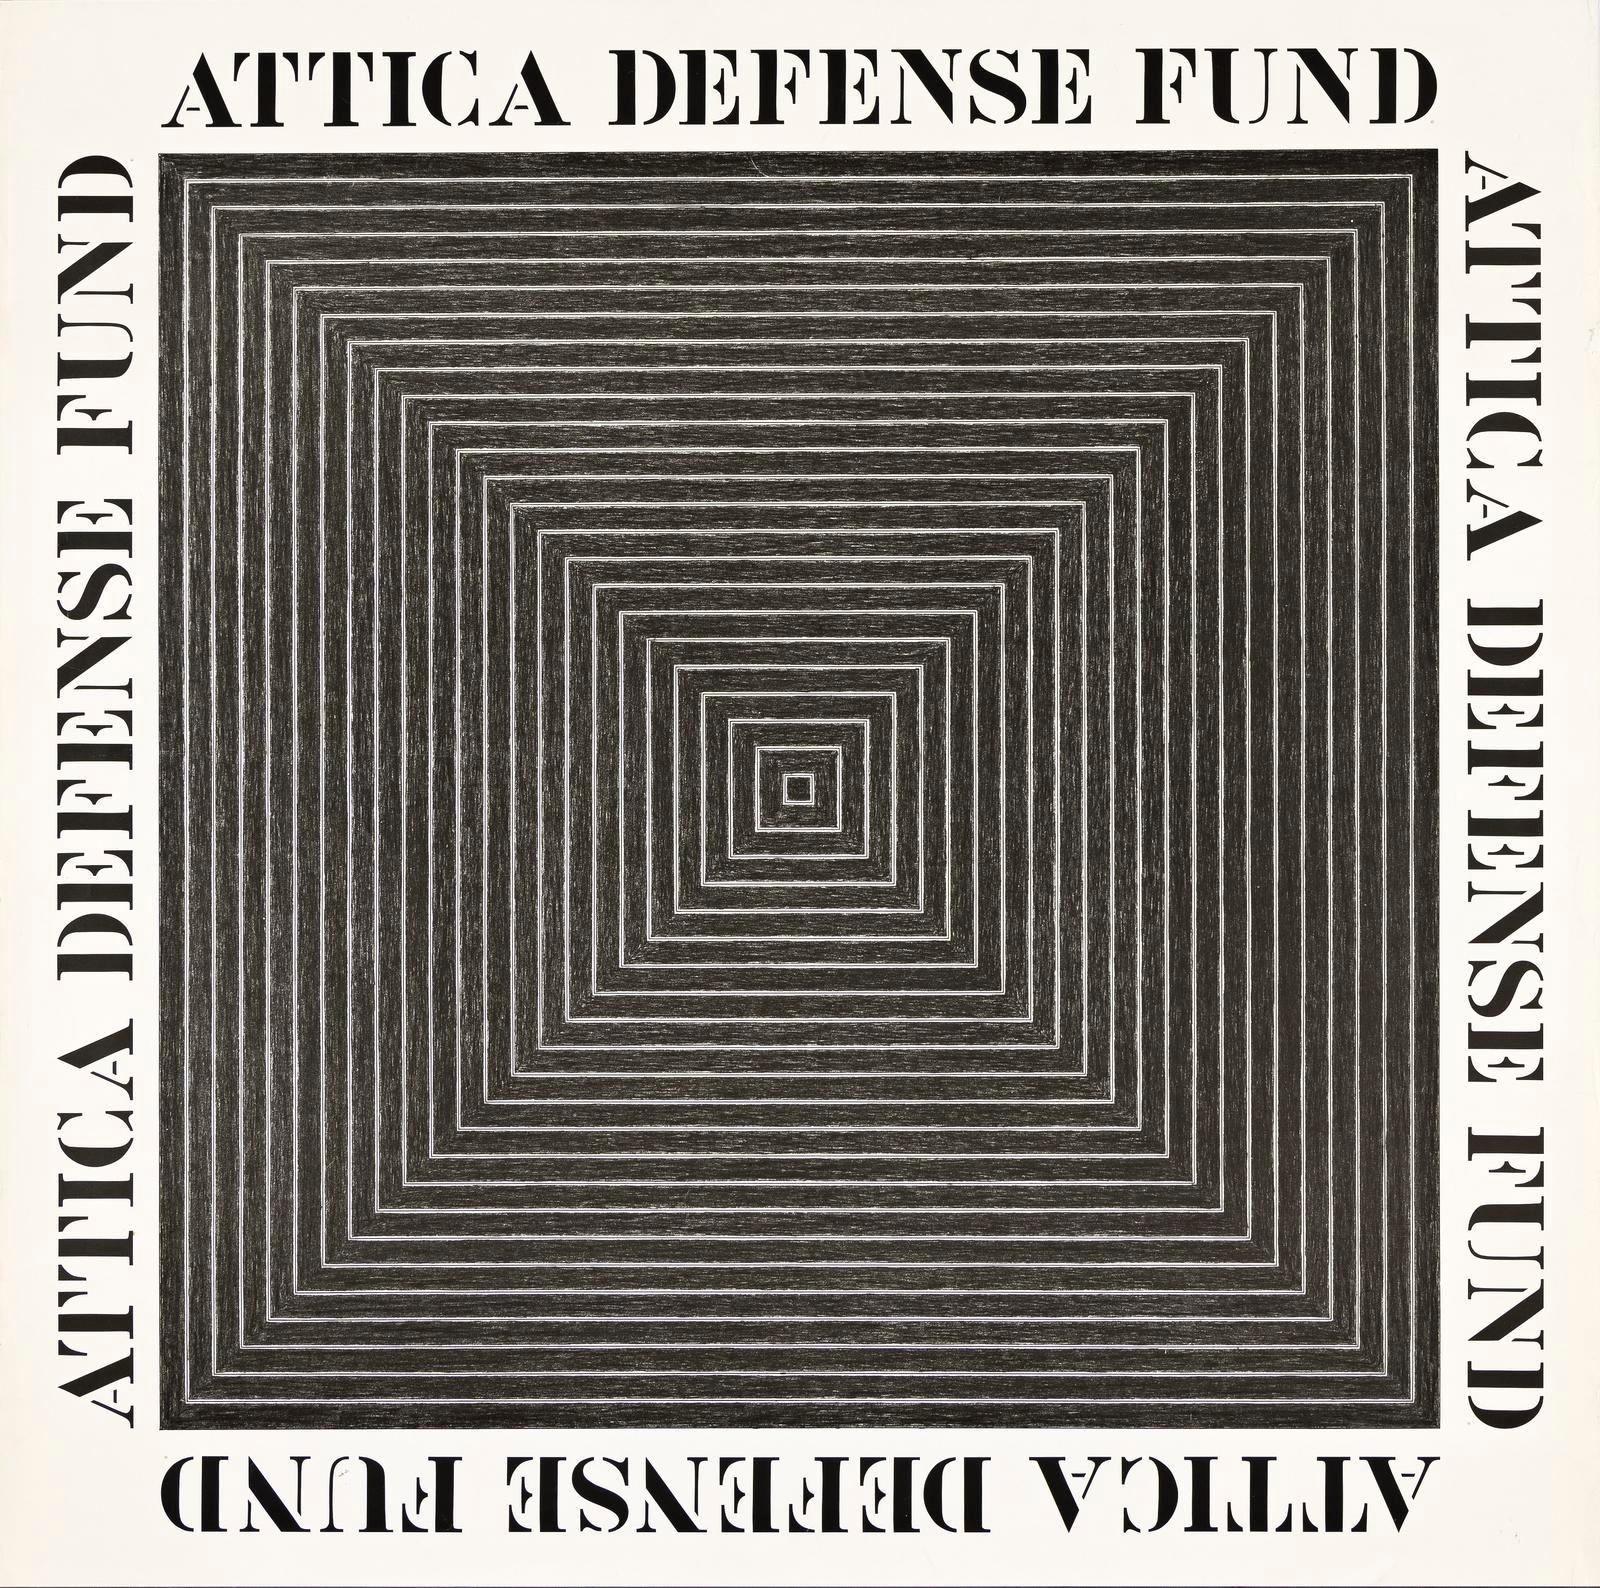 Frank Stella Abstract Print – Attica Defense Fund, historisches Plakat aus den 1970er Jahren in limitierter Auflage auf lithografischem Papier